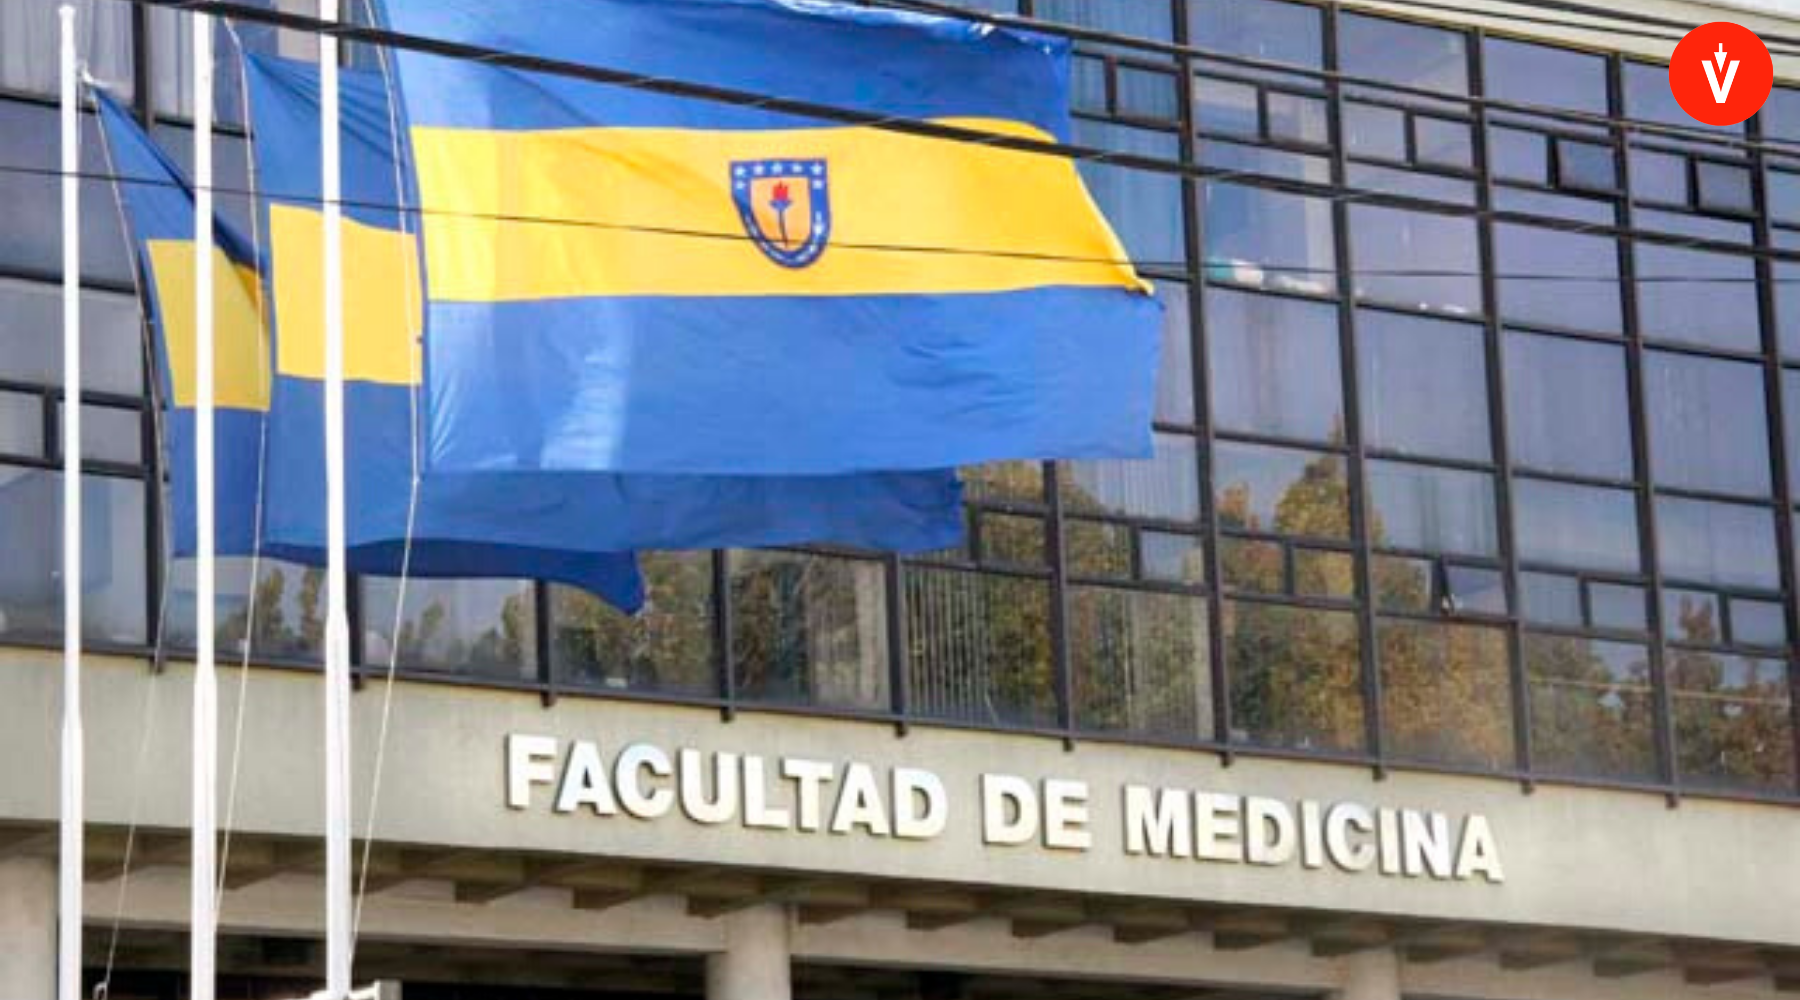 Fachada de la Facultad de Medicina de la Universidad de Concepción, con logo de EVoting en la esquina